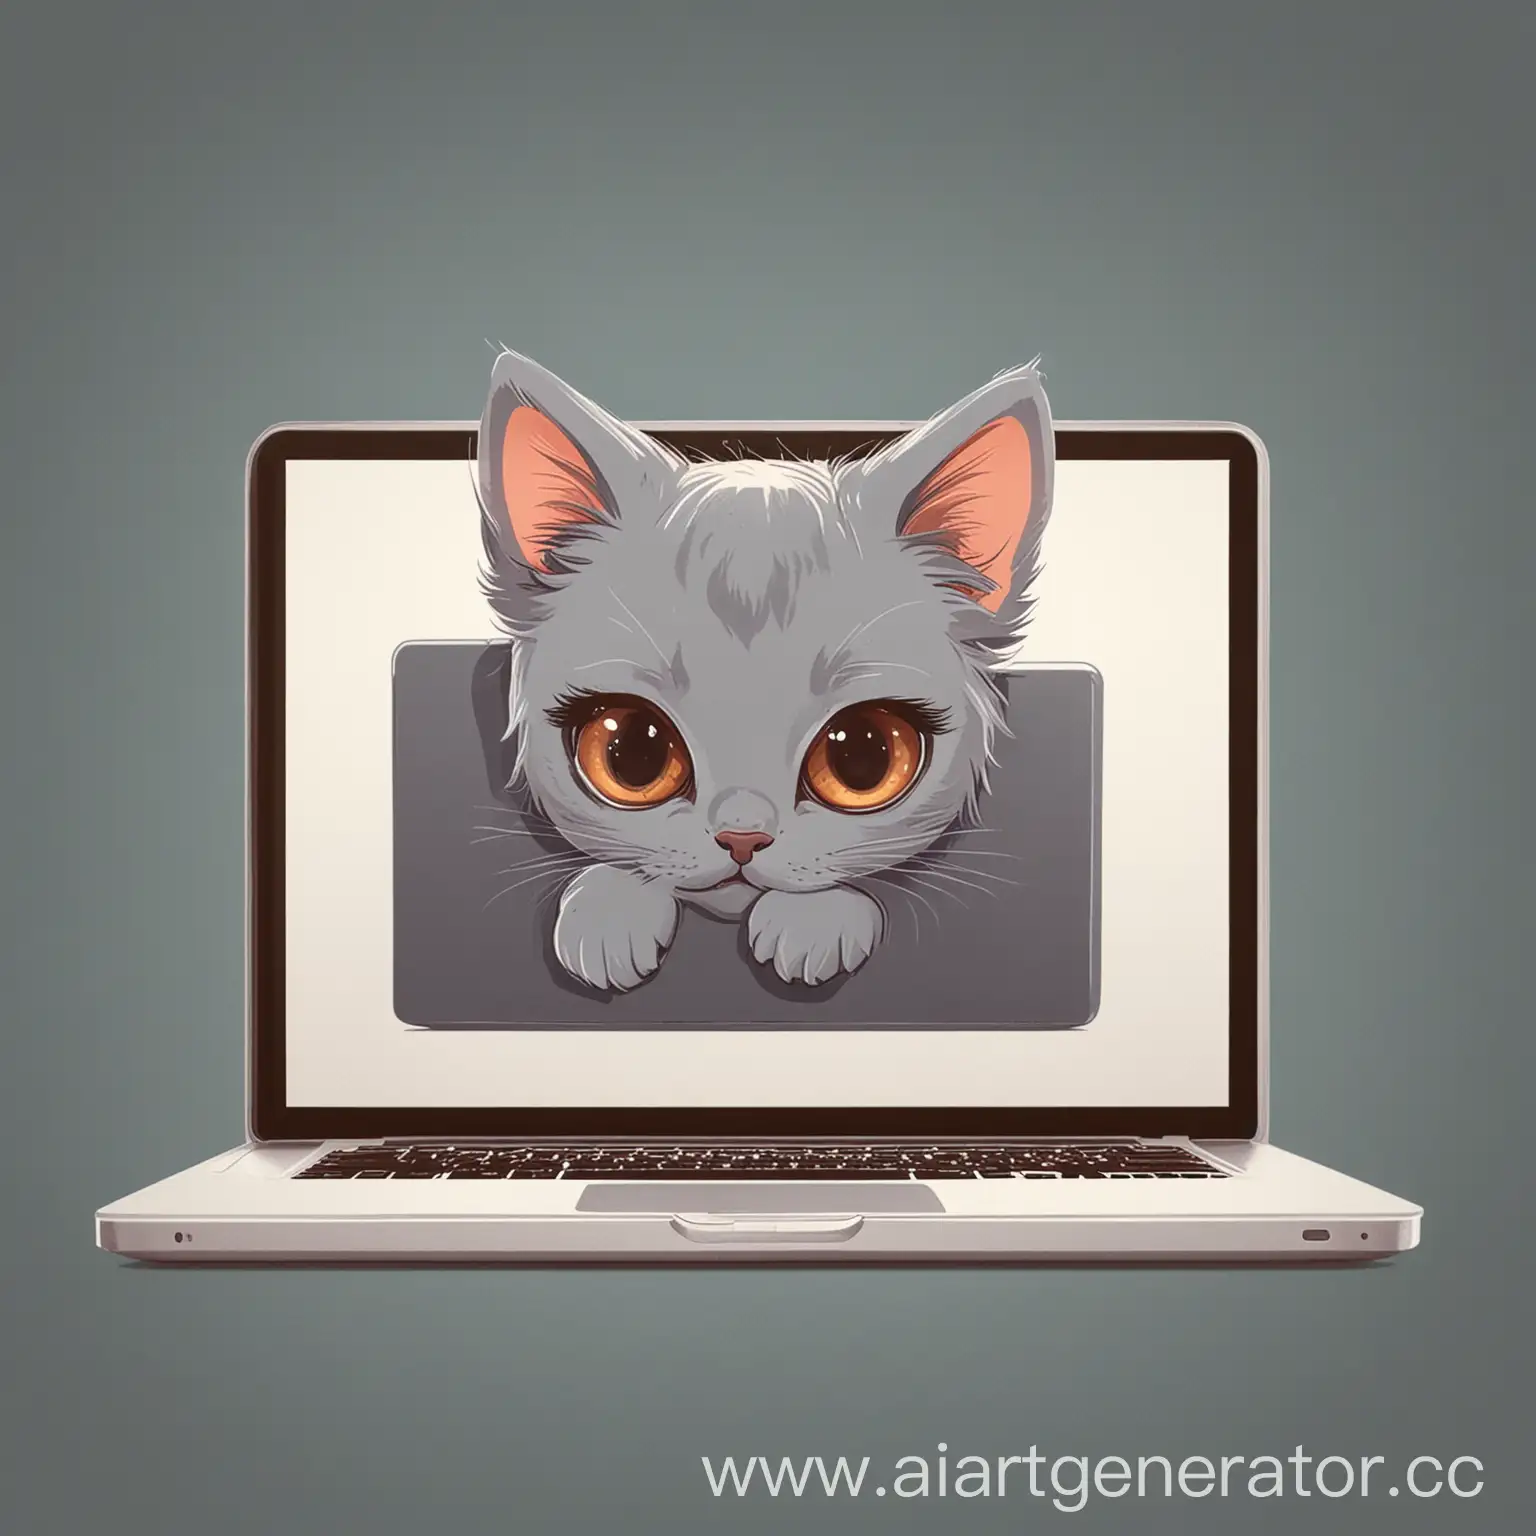 изображение для логотипа в векторной графике, котенок выглядывает из-за экрана ноутбука, ноутбук повернут задней стороной